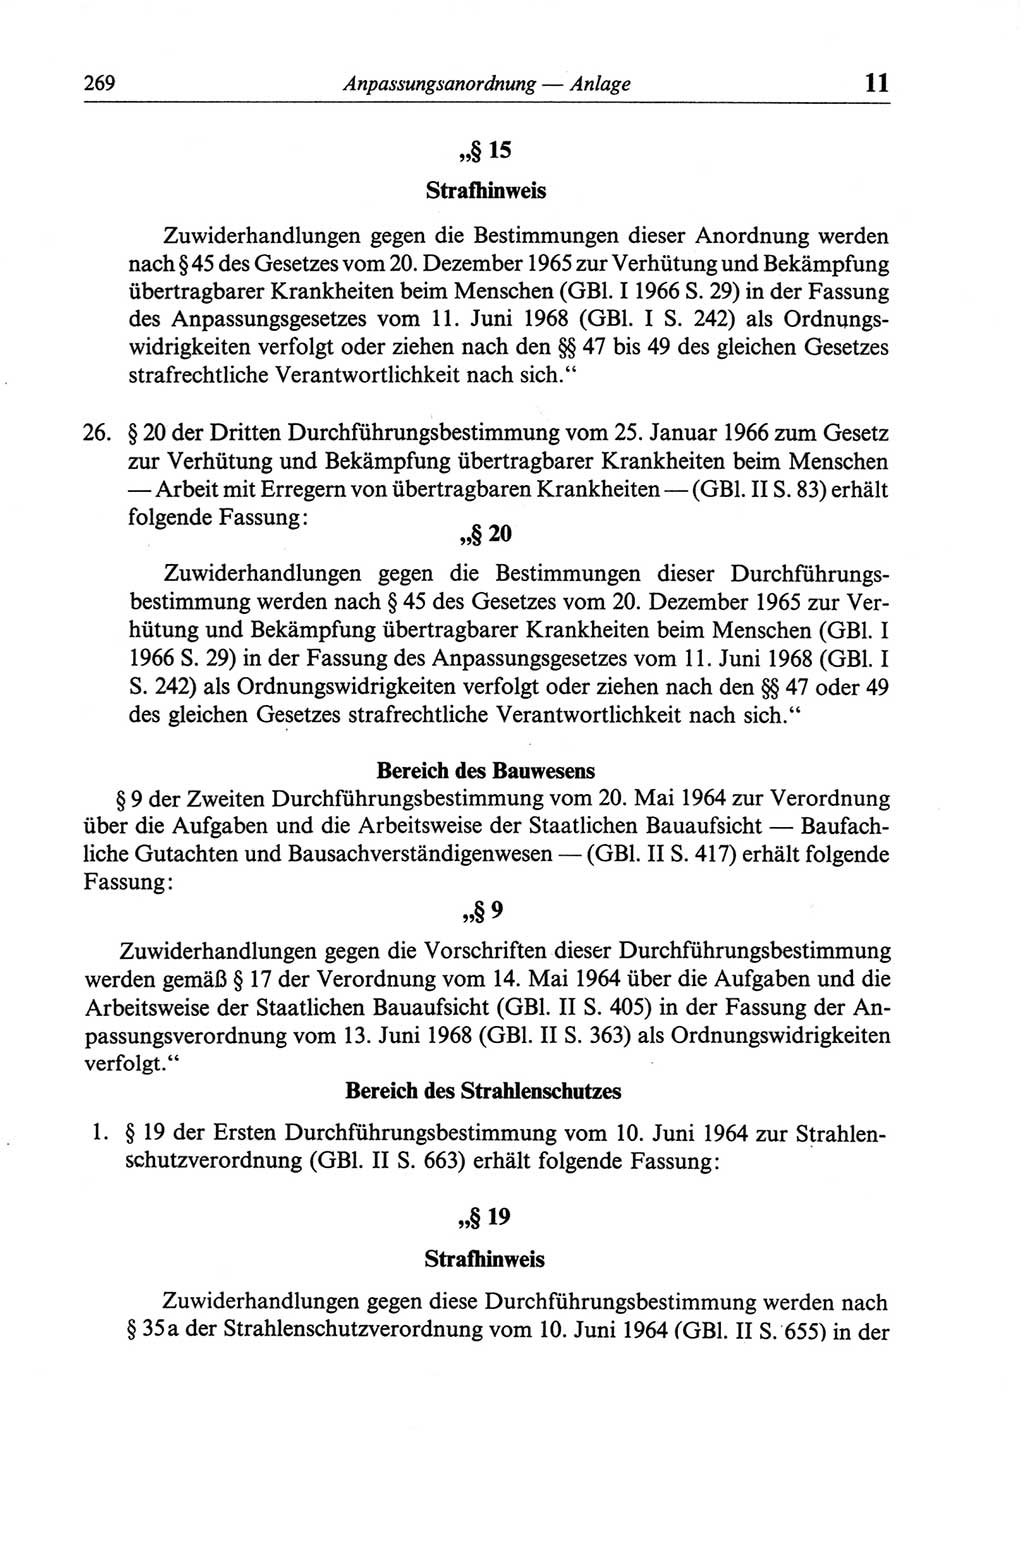 Strafgesetzbuch (StGB) der Deutschen Demokratischen Republik (DDR) und angrenzende Gesetze und Bestimmungen 1968, Seite 269 (StGB Ges. Best. DDR 1968, S. 269)